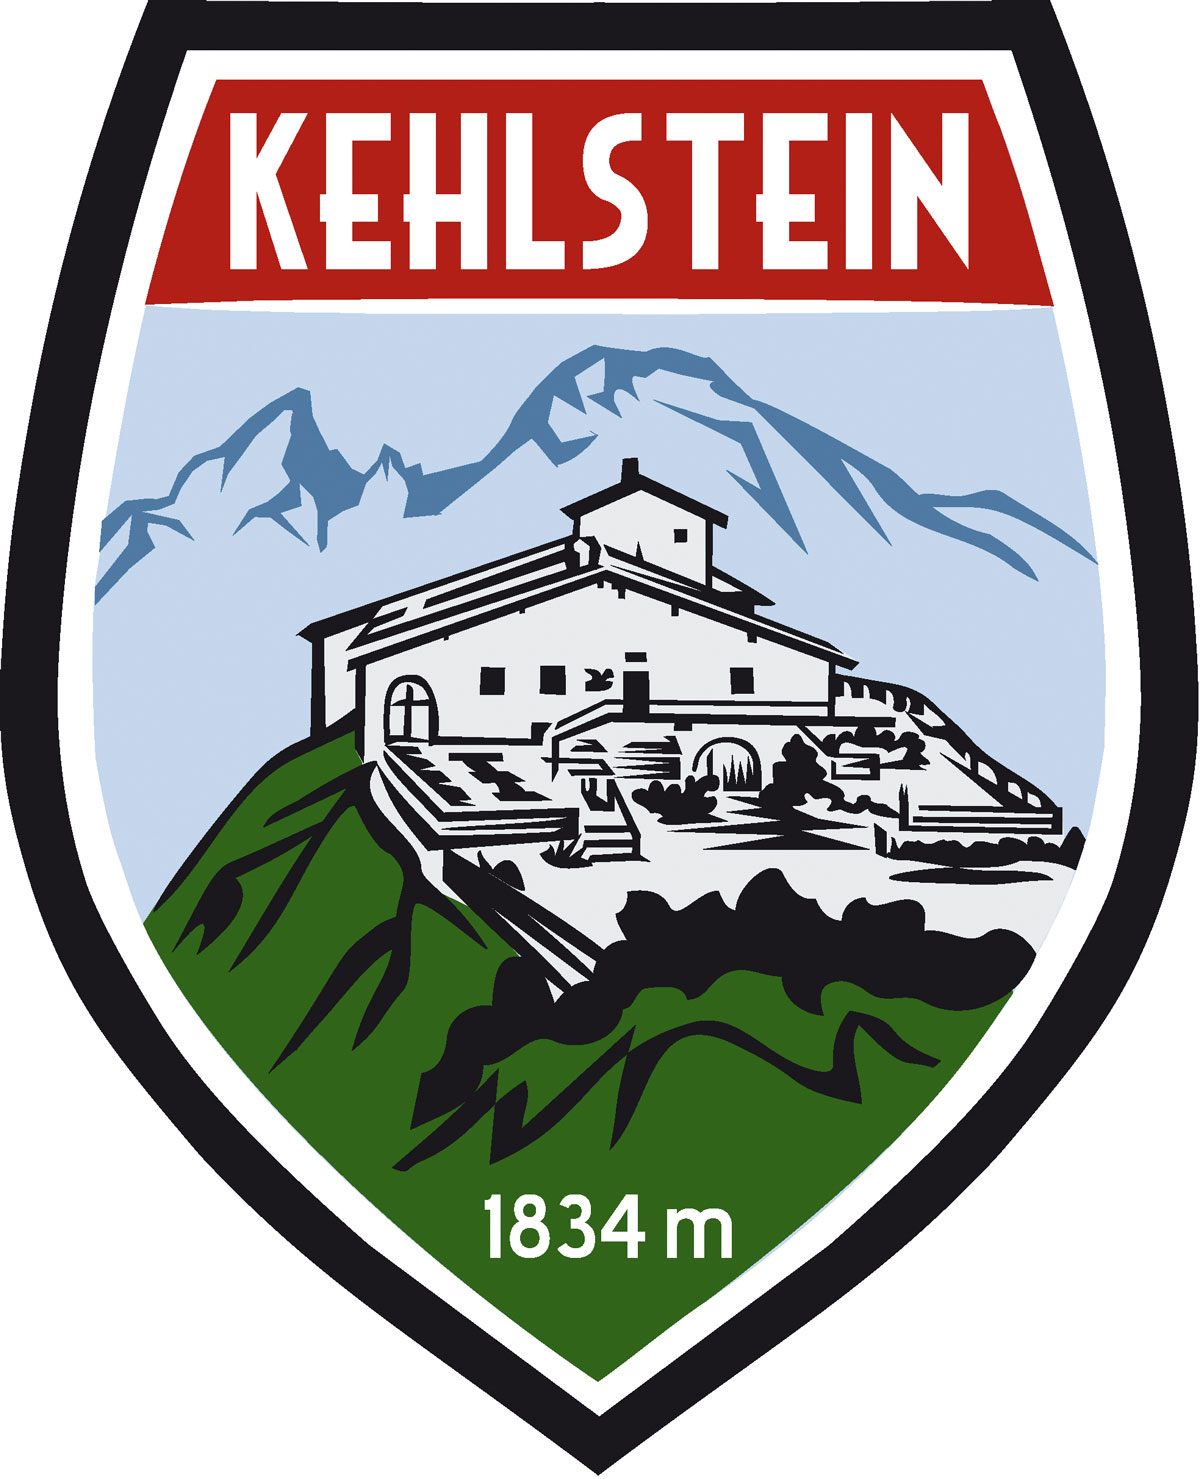 Wappen Aufkleber Sticker Kehlstein - Kehlsteinhaus - Eagles Nest  - Motiv blau